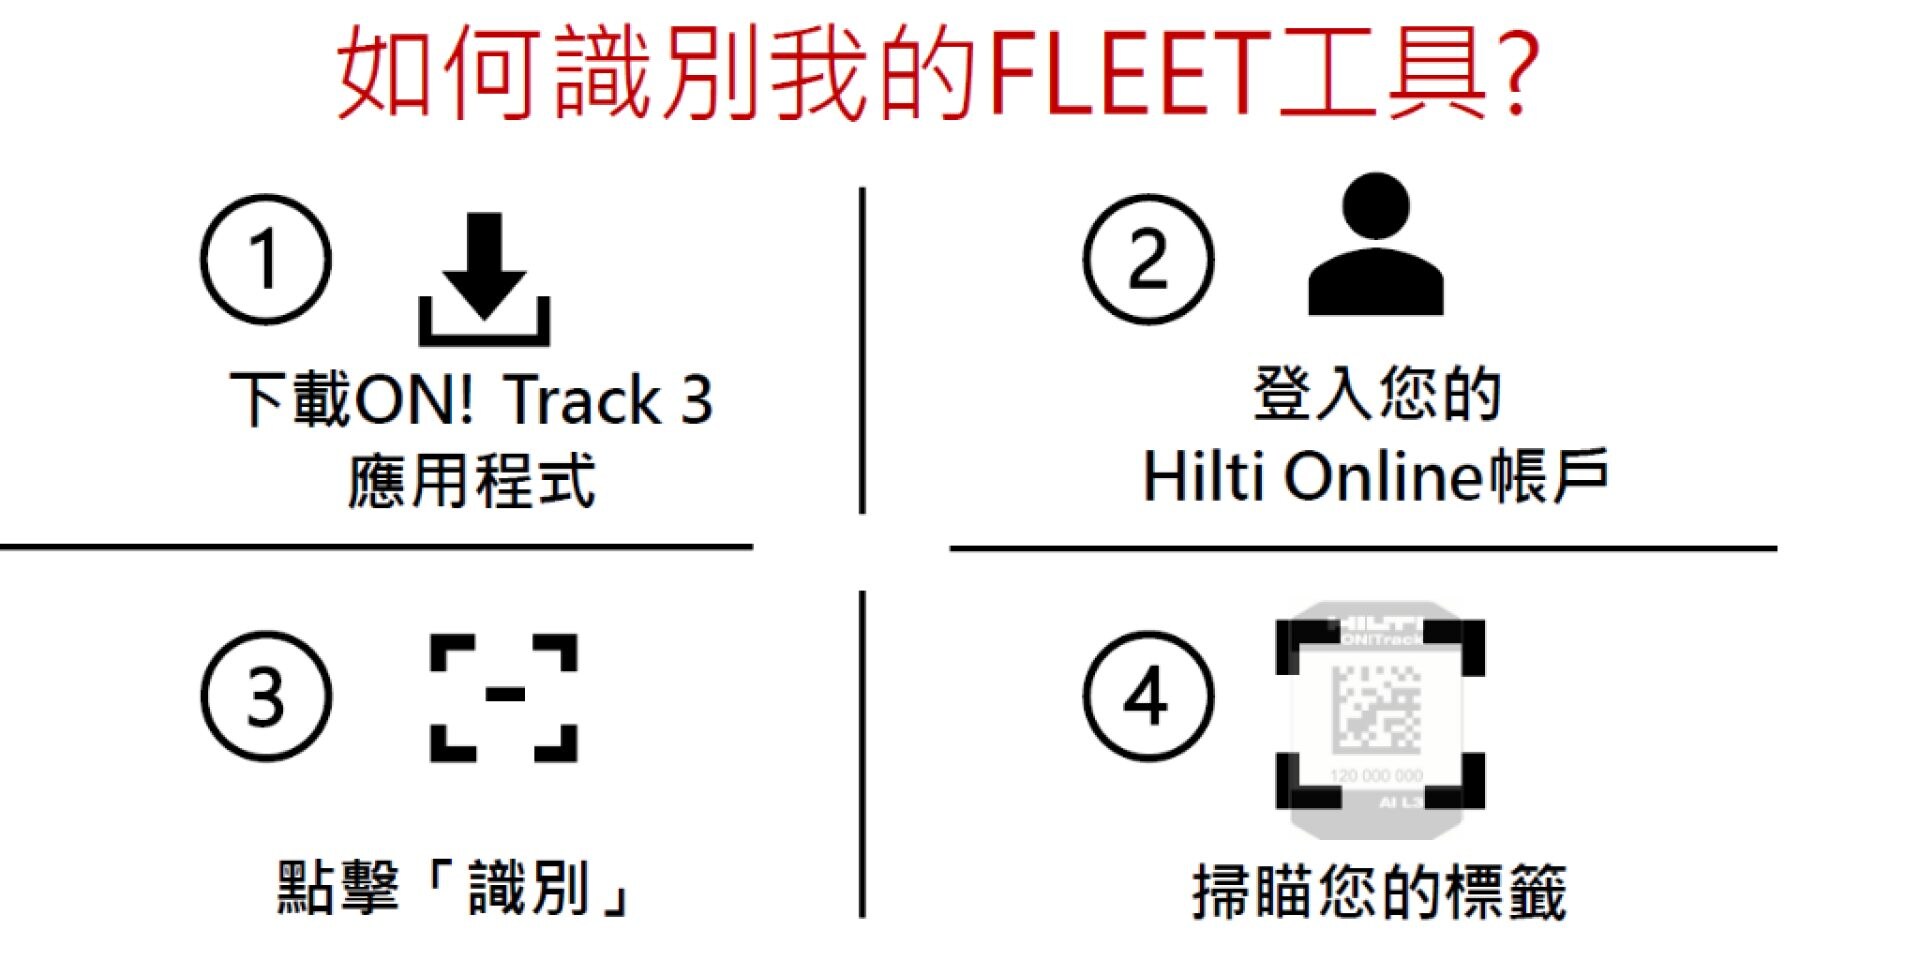 Hilti fleet management